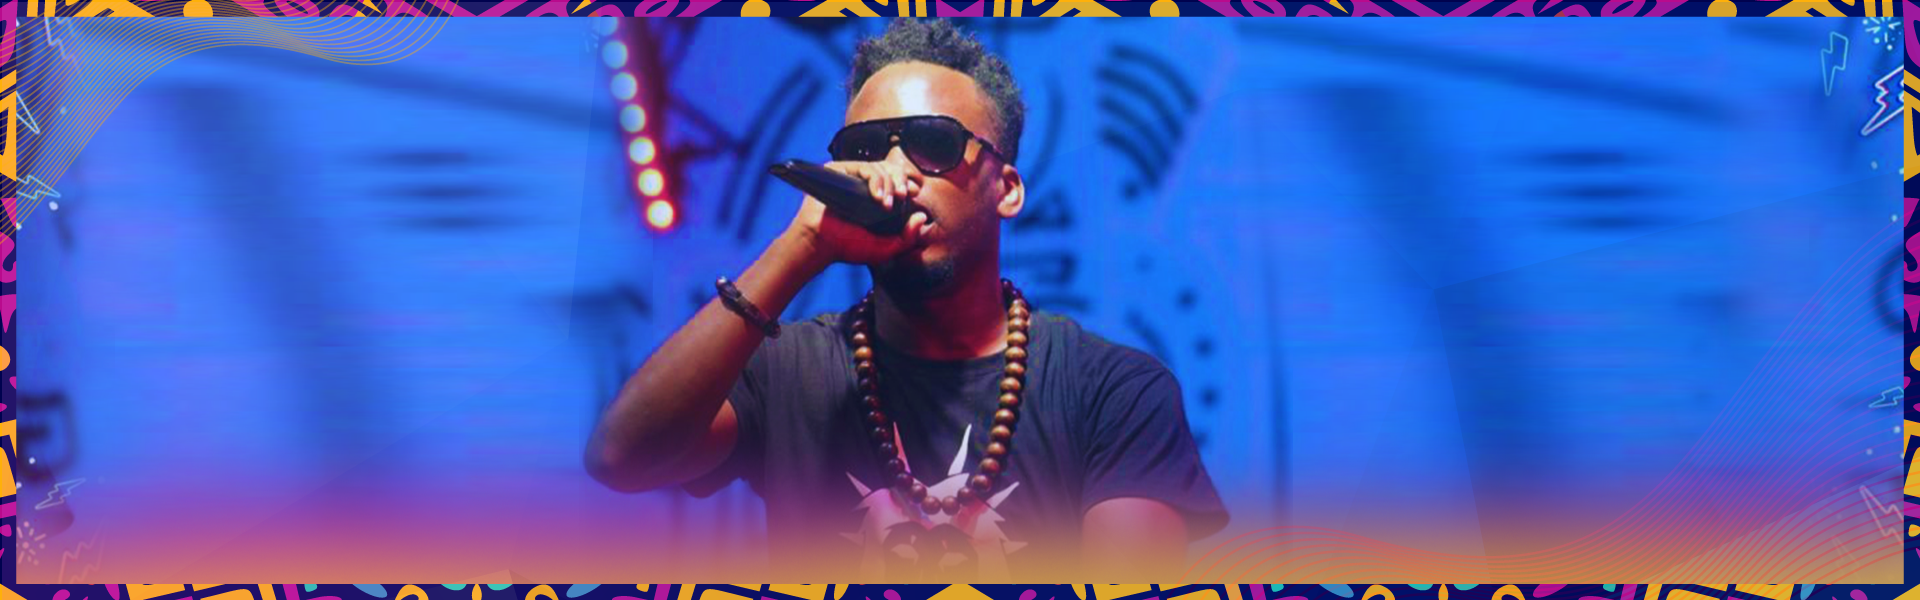  Le Festival Afropolitain Nomade annonce des performances en ligne pour avril 